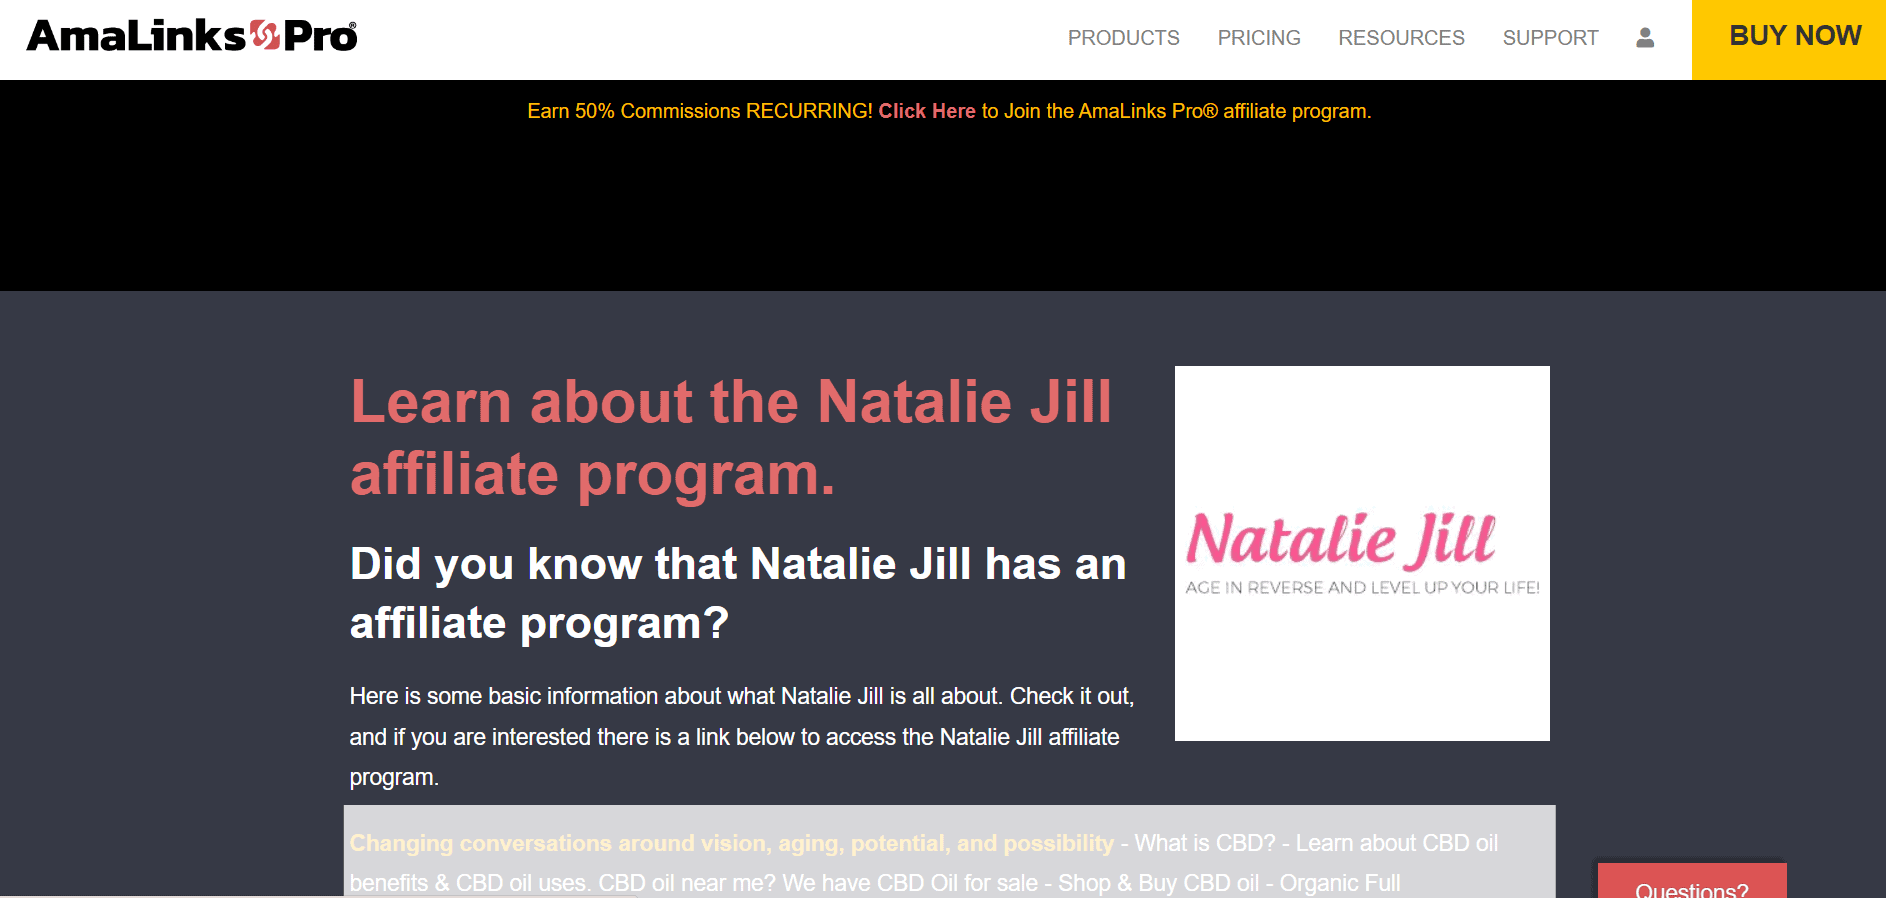 Natalie Jill Overview